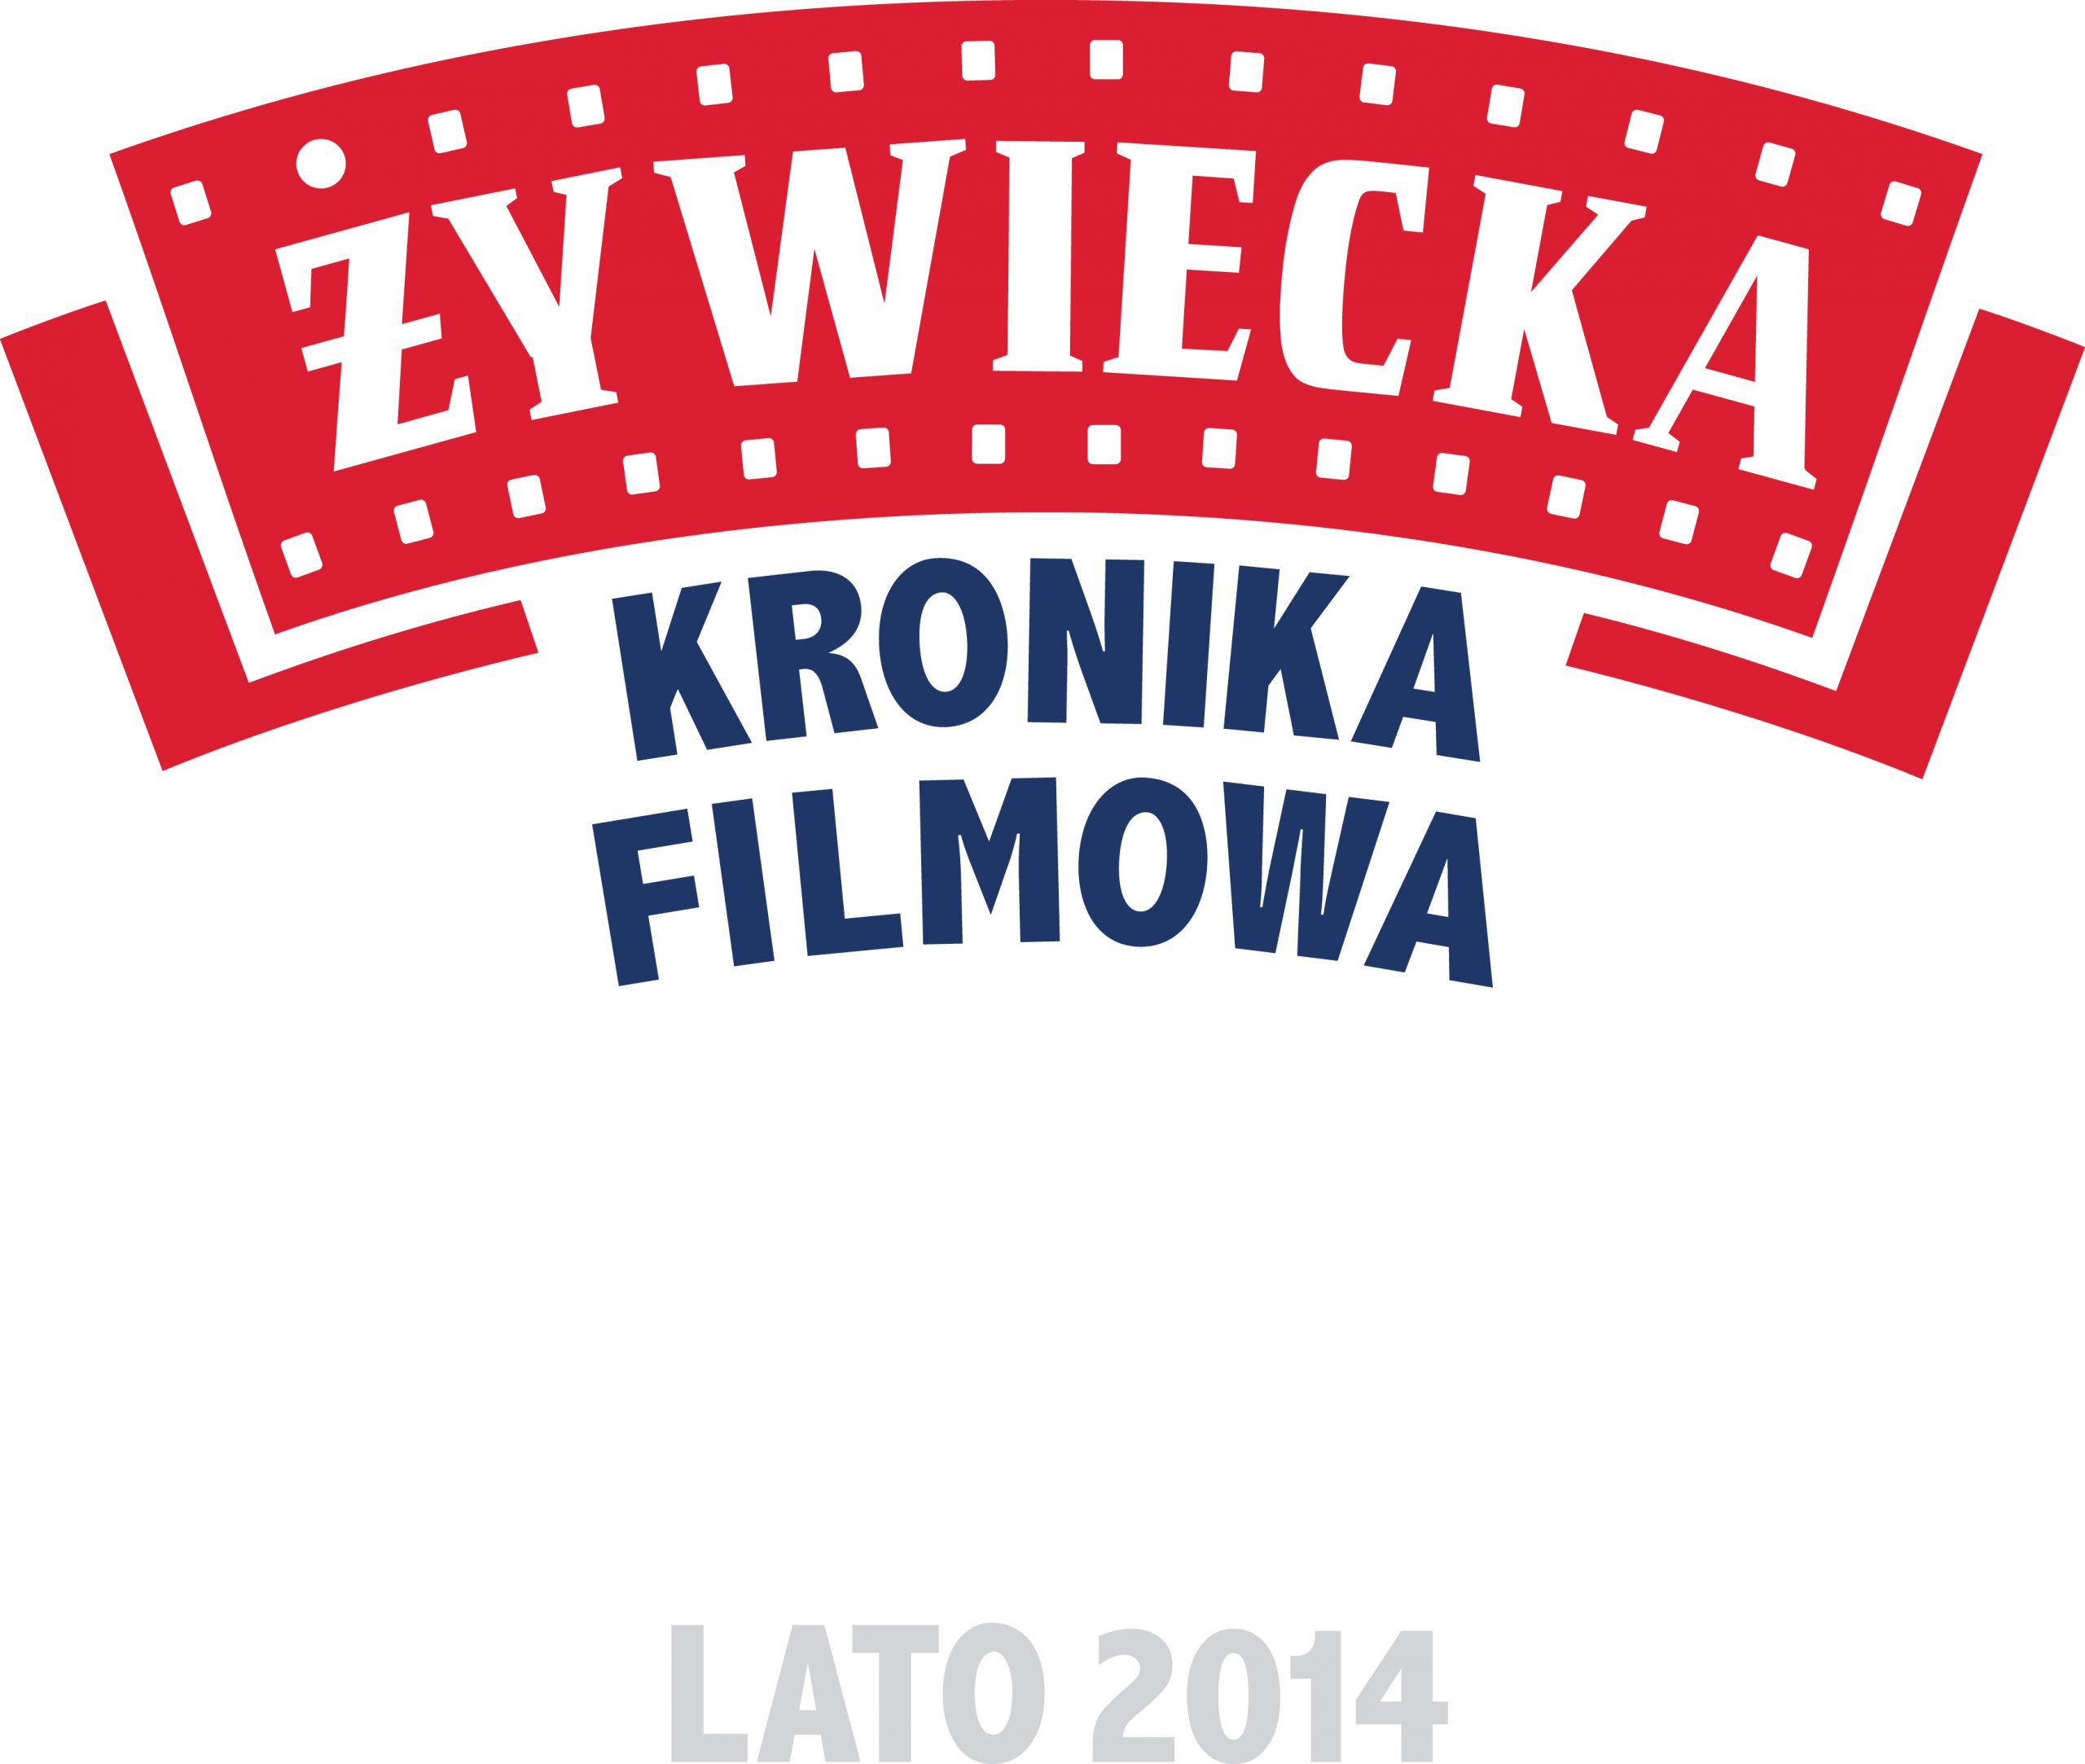 Żywiecka Kronika Filmowa – nowa kampania marki Żywiec